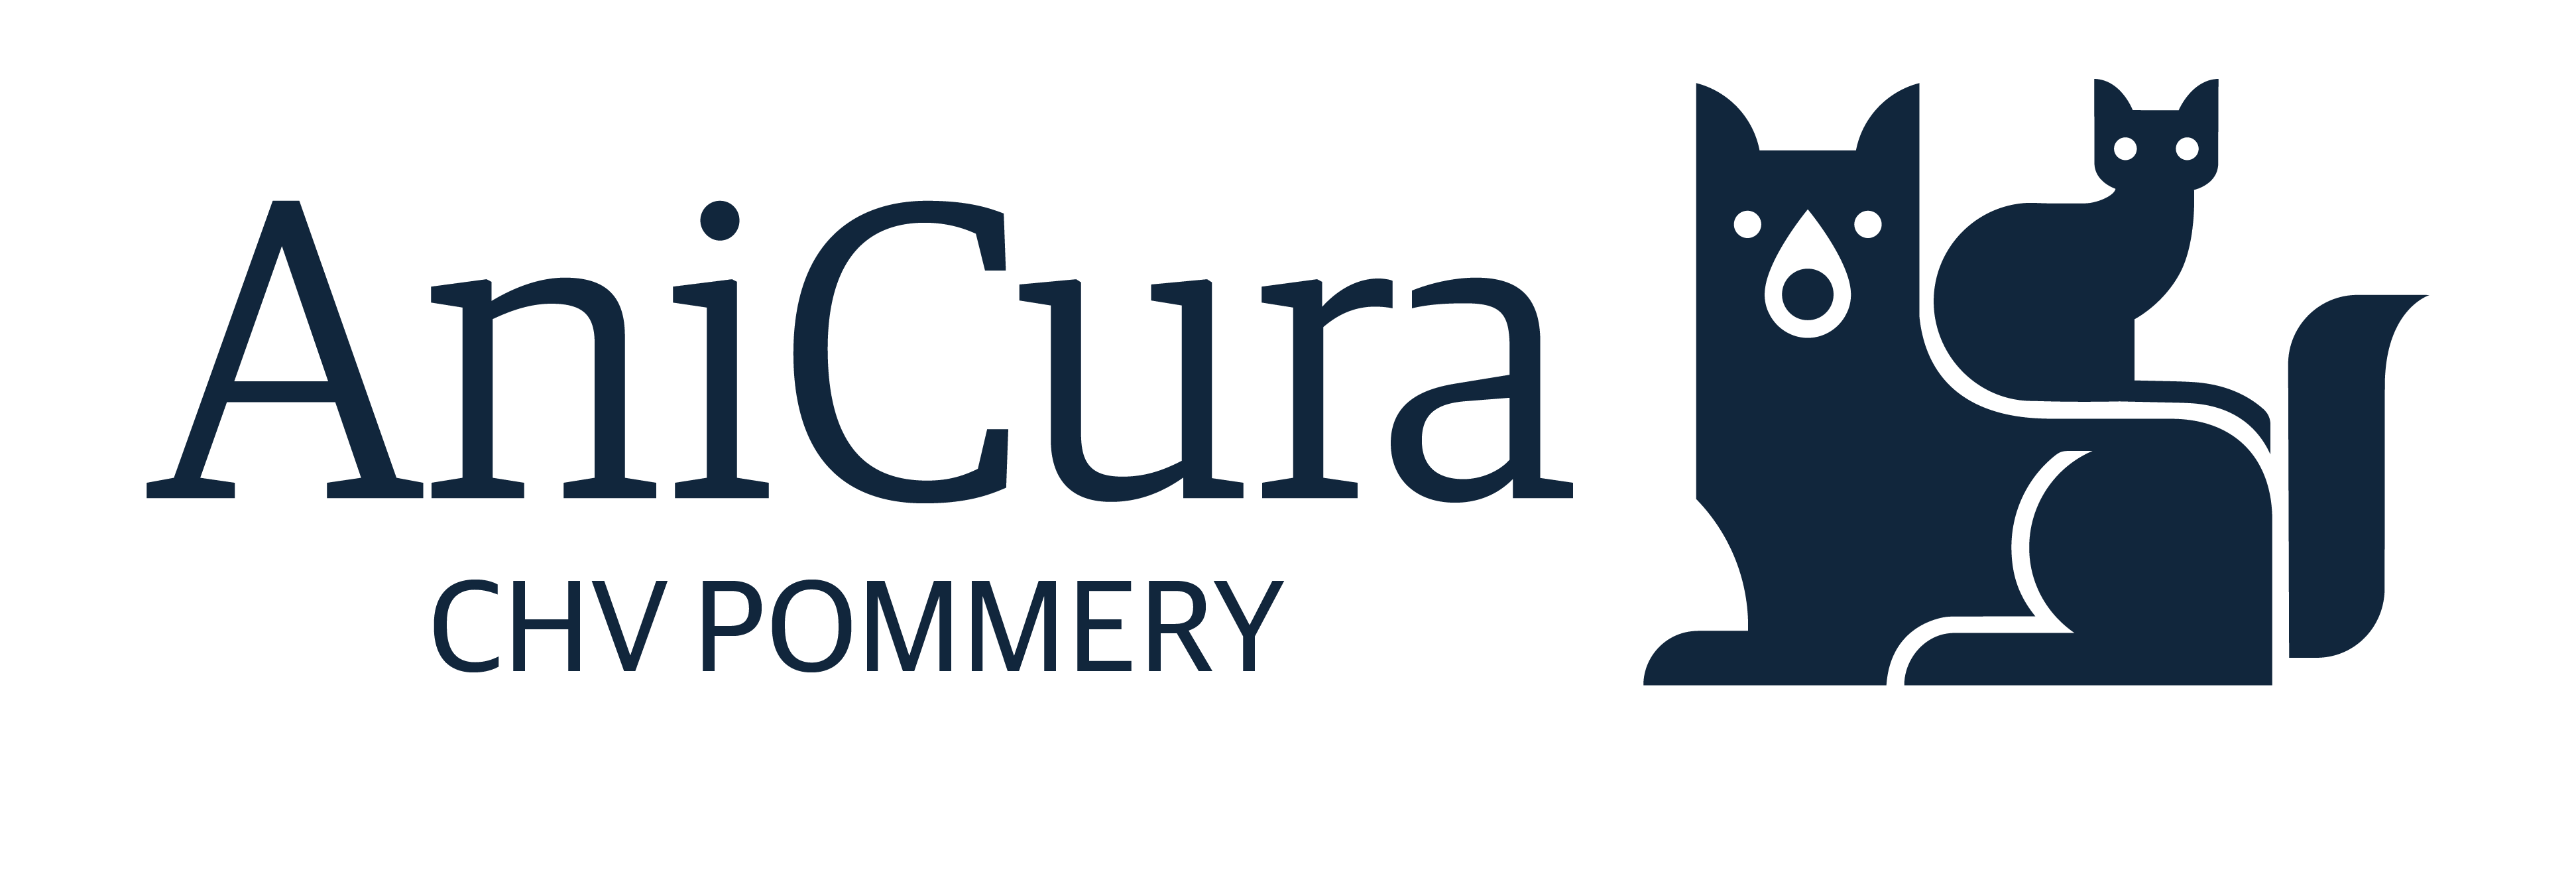 CHV AniCura Pommery à Reims logo